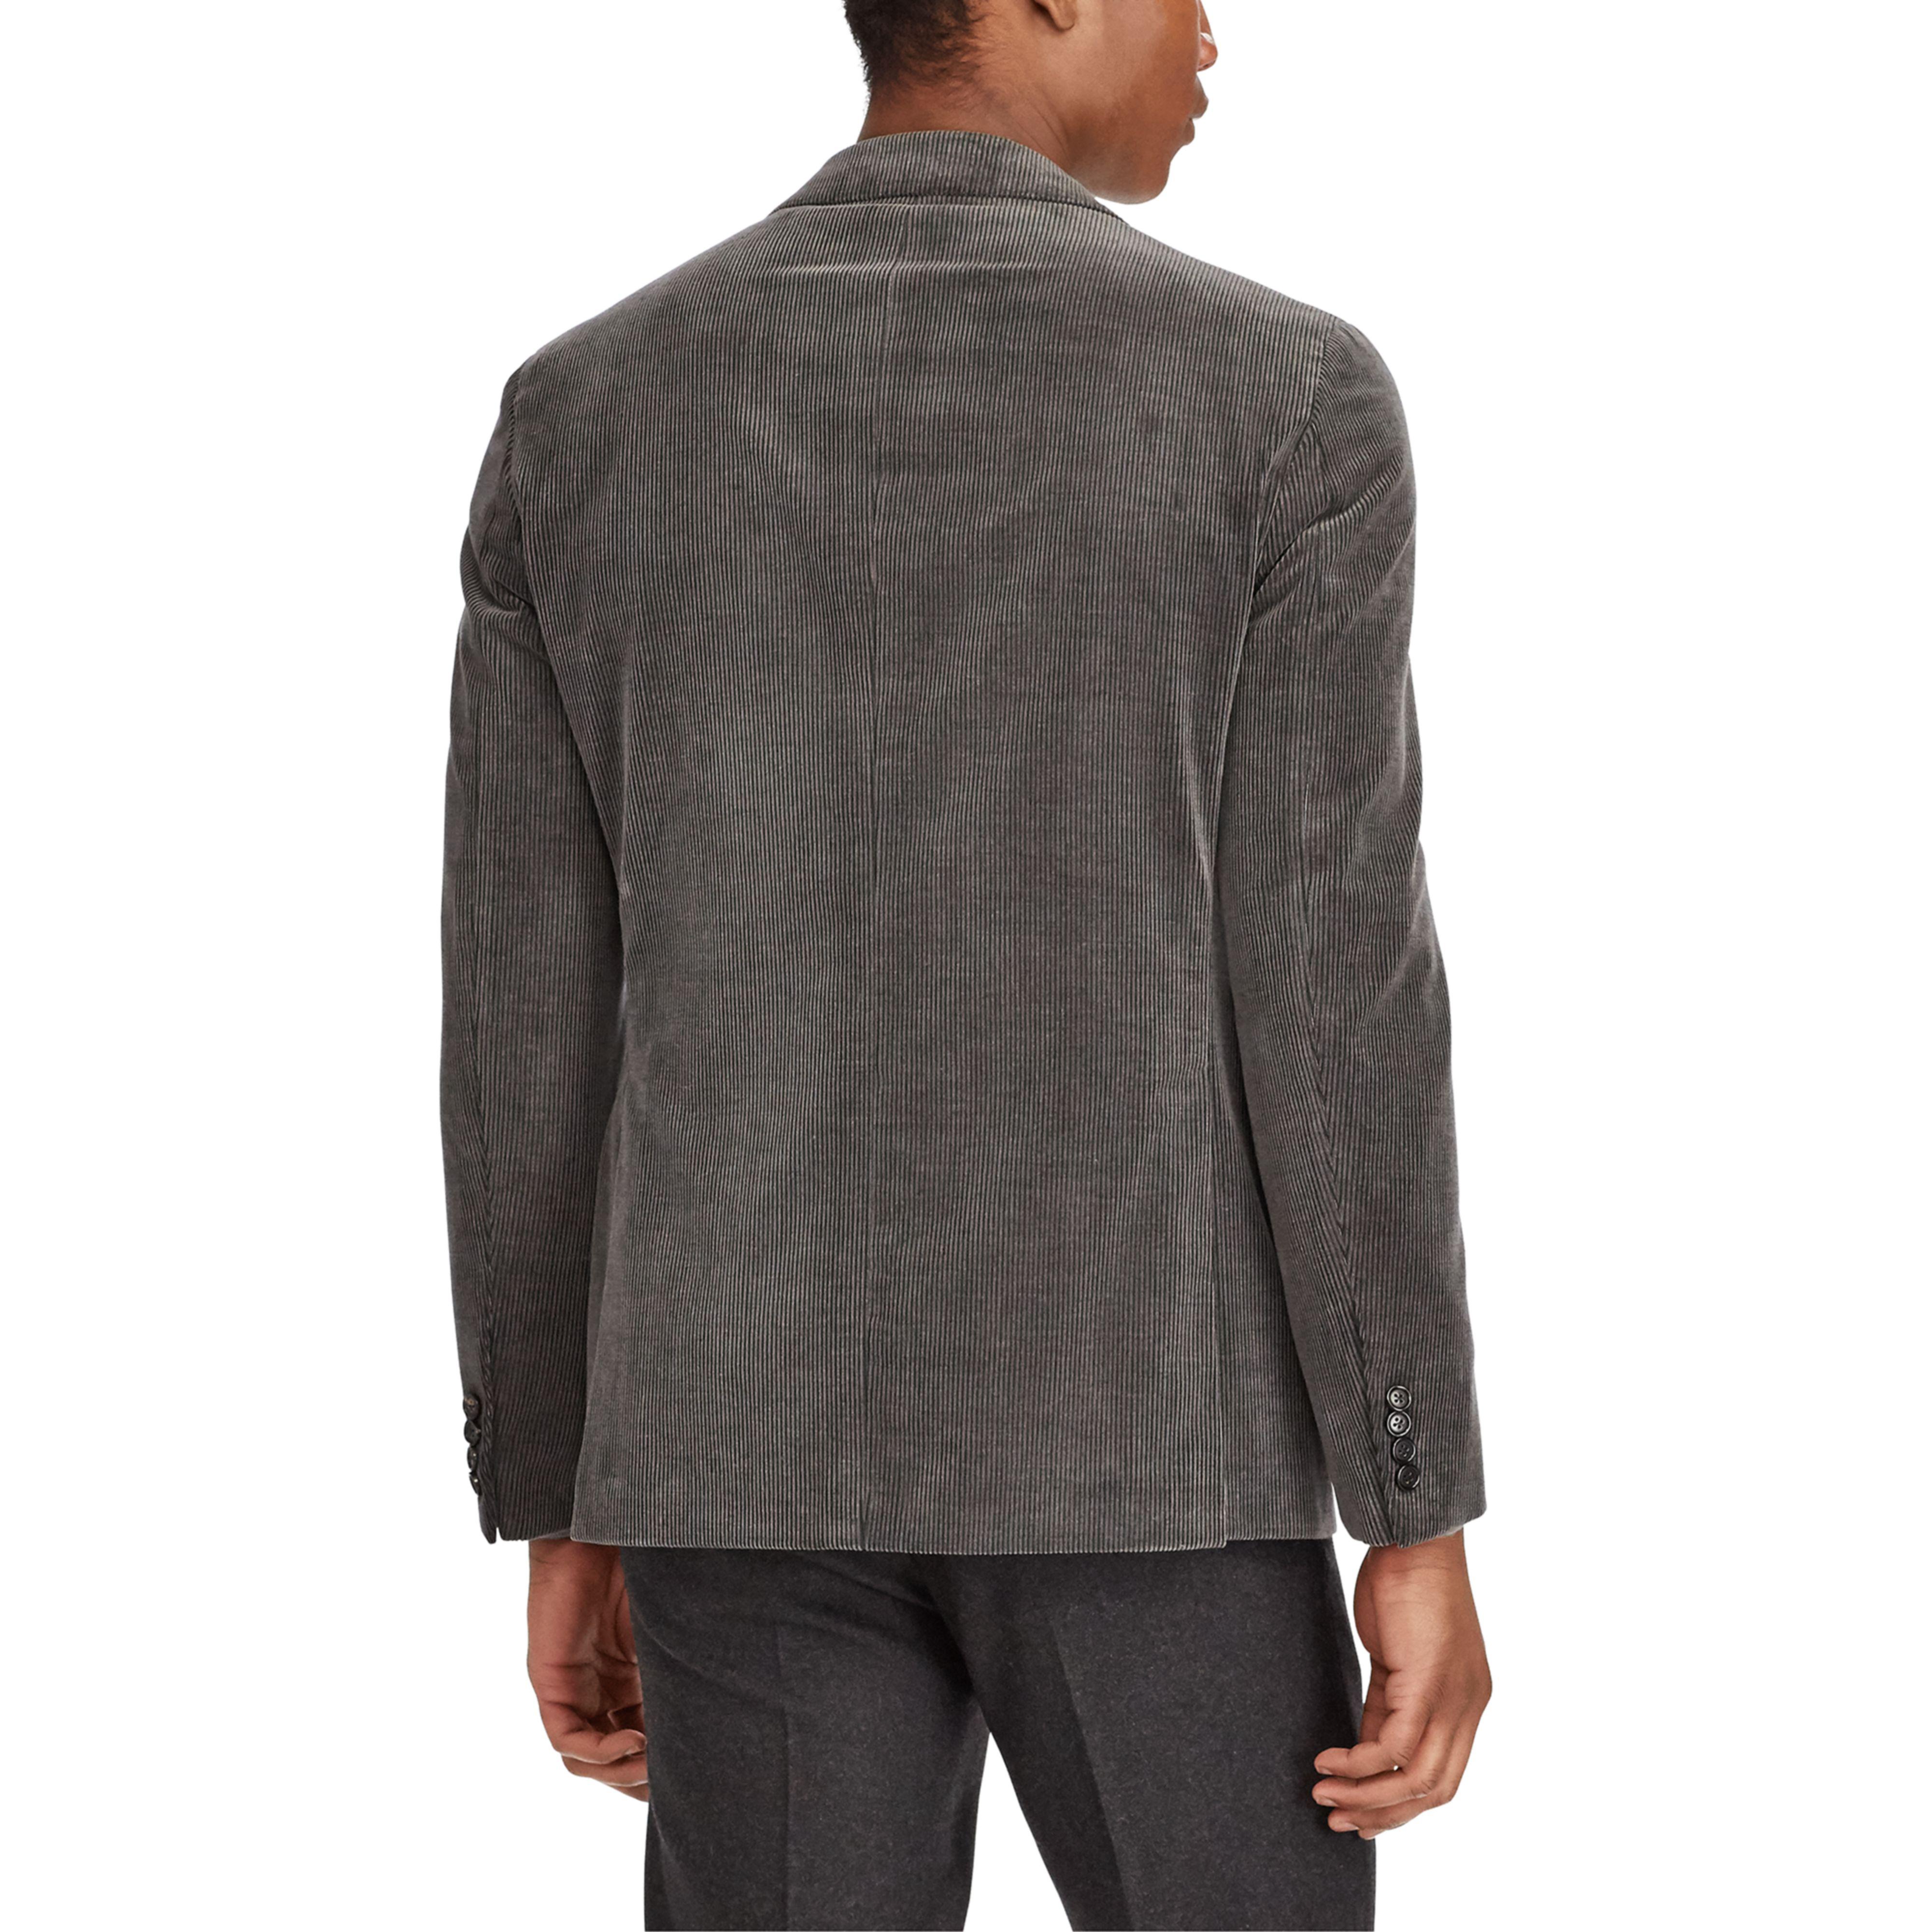 Ralph Lauren Purple Label Corduroy Suit Jacket in Gray for Men - Lyst